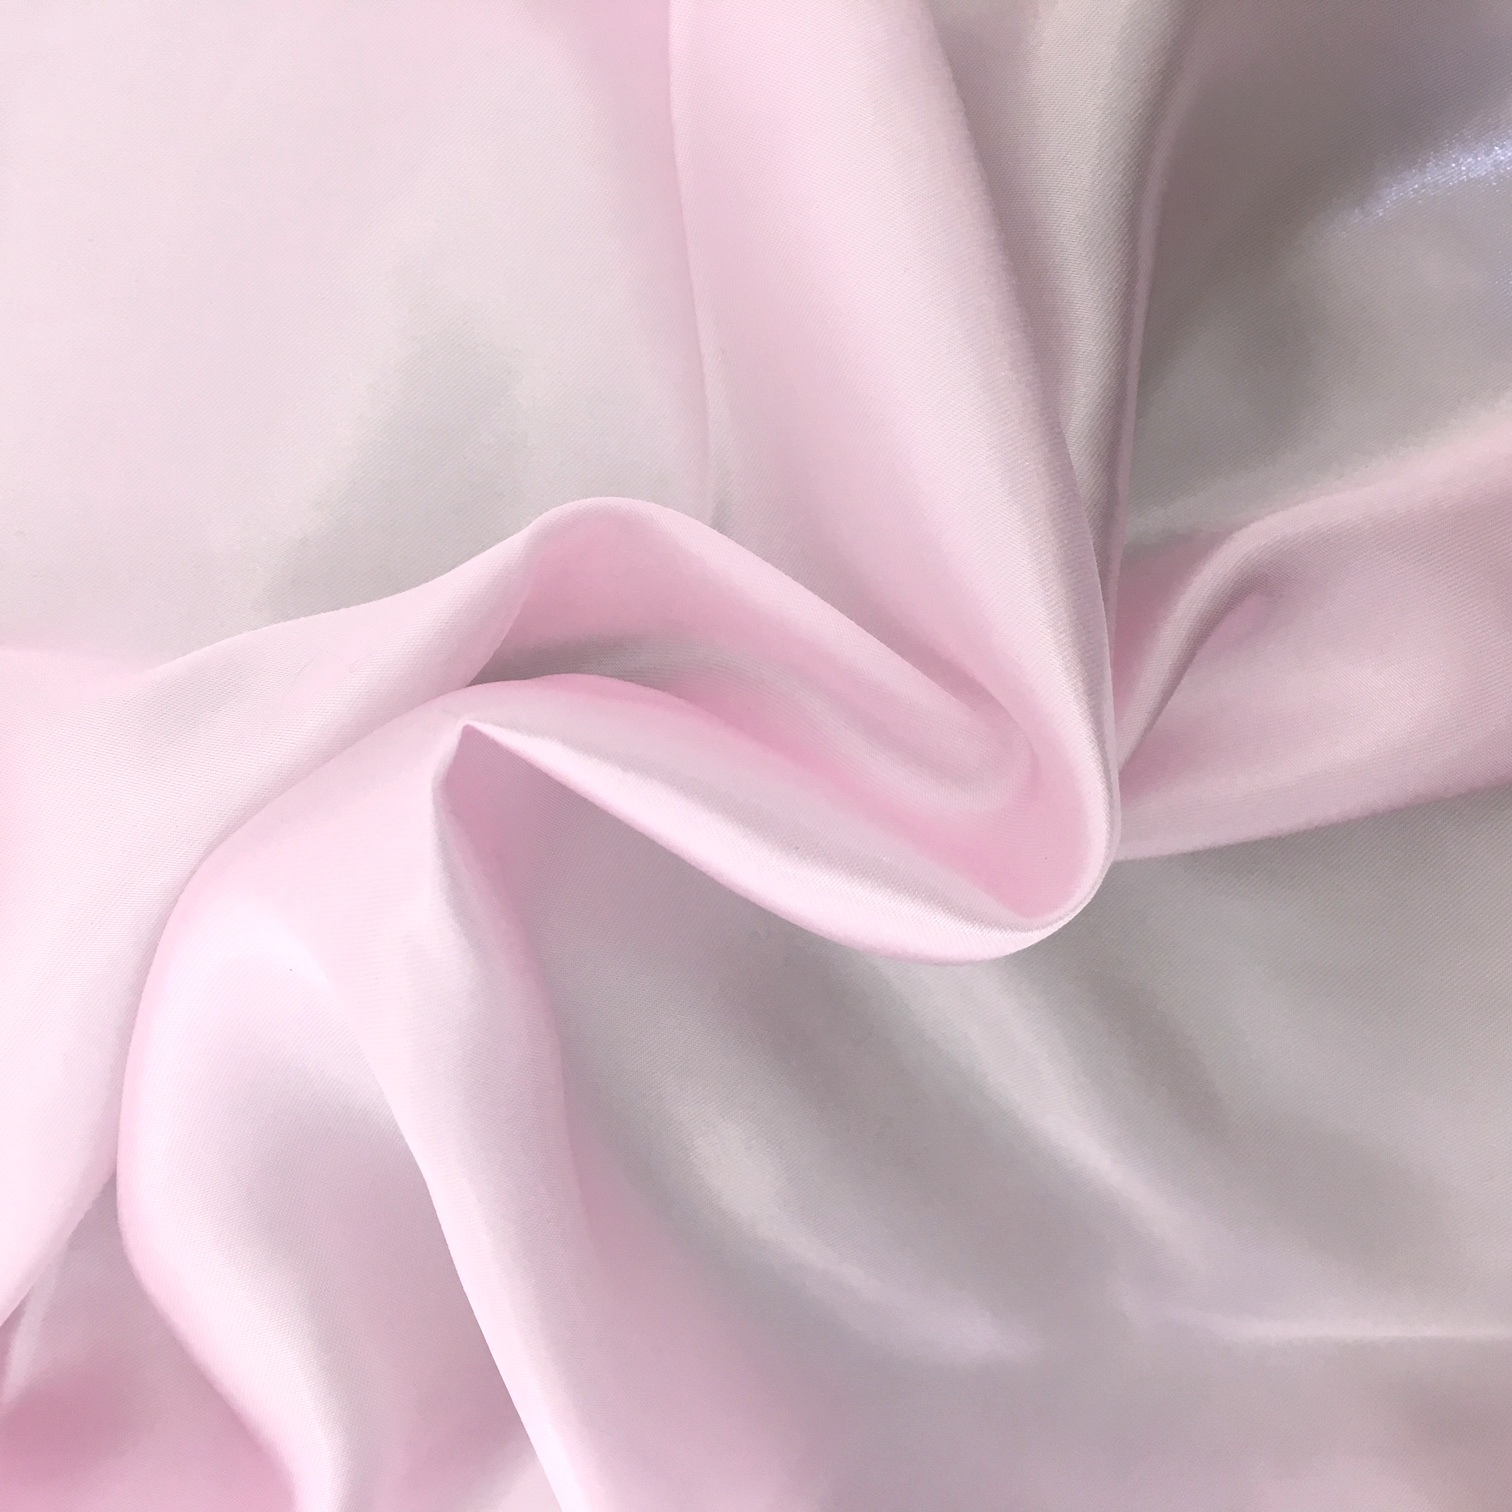 20 metres of Polyester Satin - Baby Pink